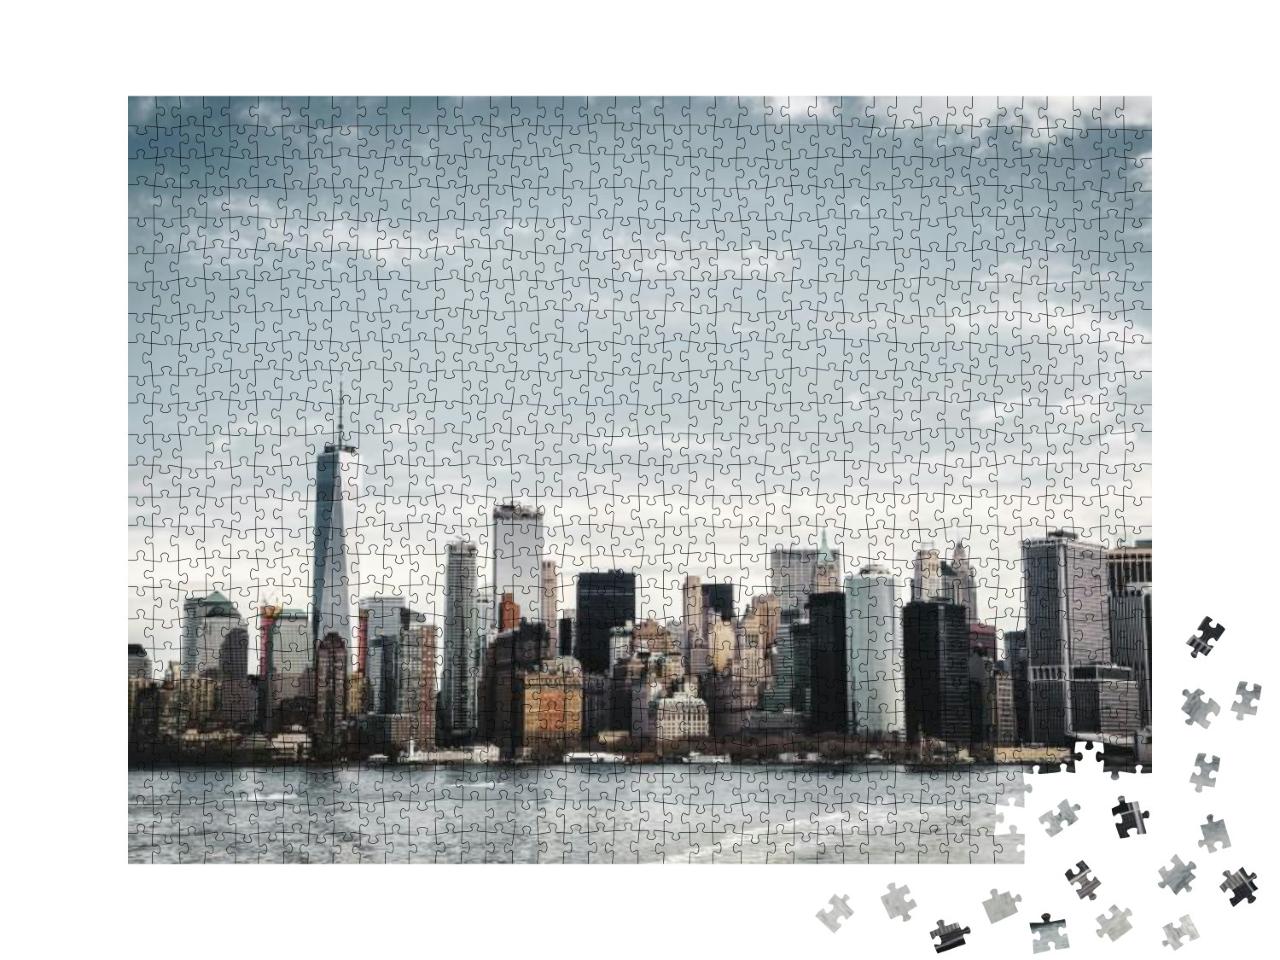 Puzzle 1000 Teile „Skyline von Manhattan vom Hudson River aus fotografiert“